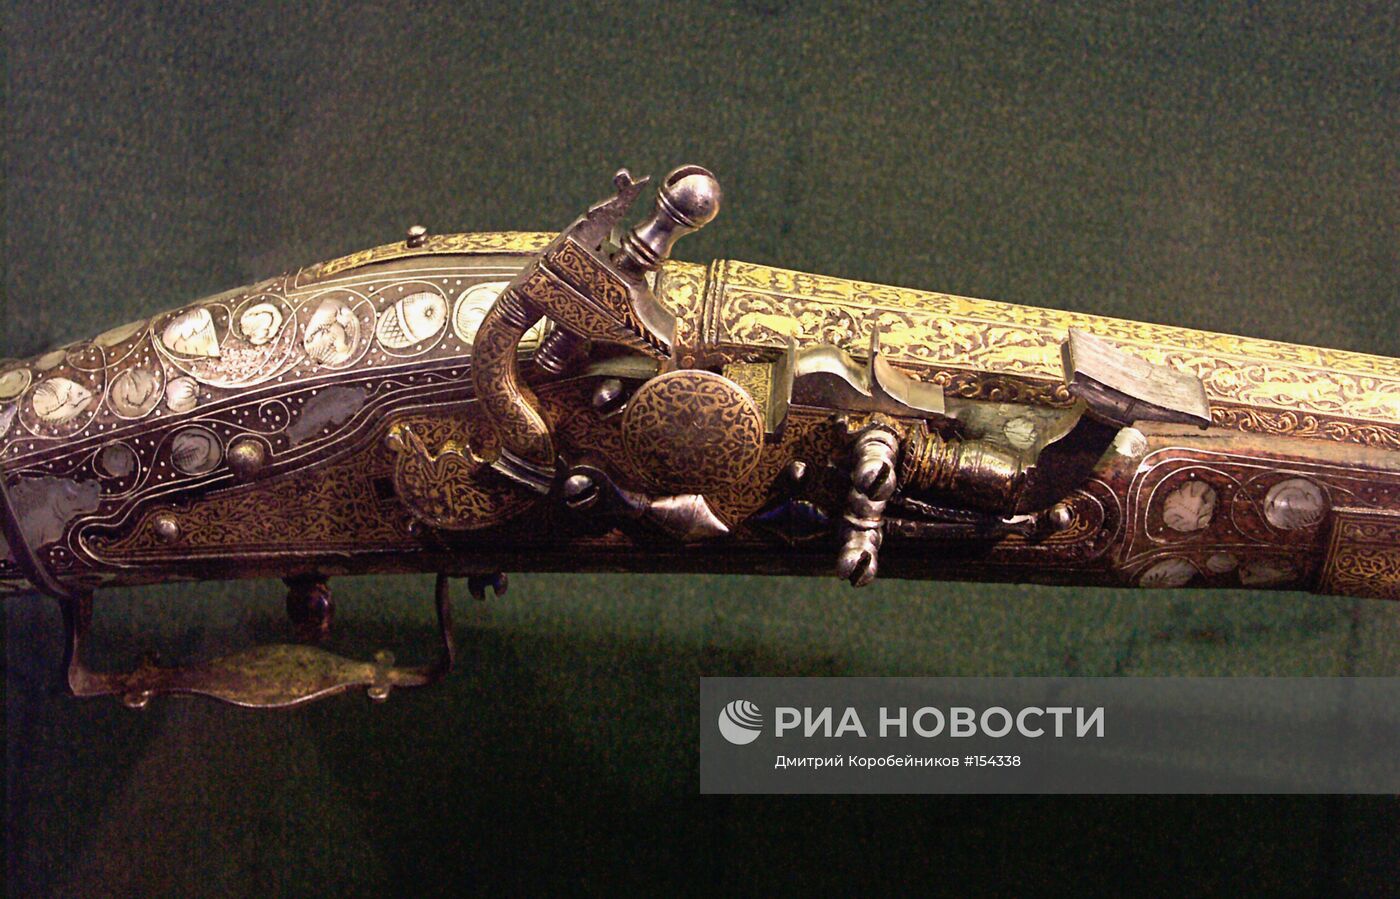 Оружие на выставке "Россия-Британия" в Кремле